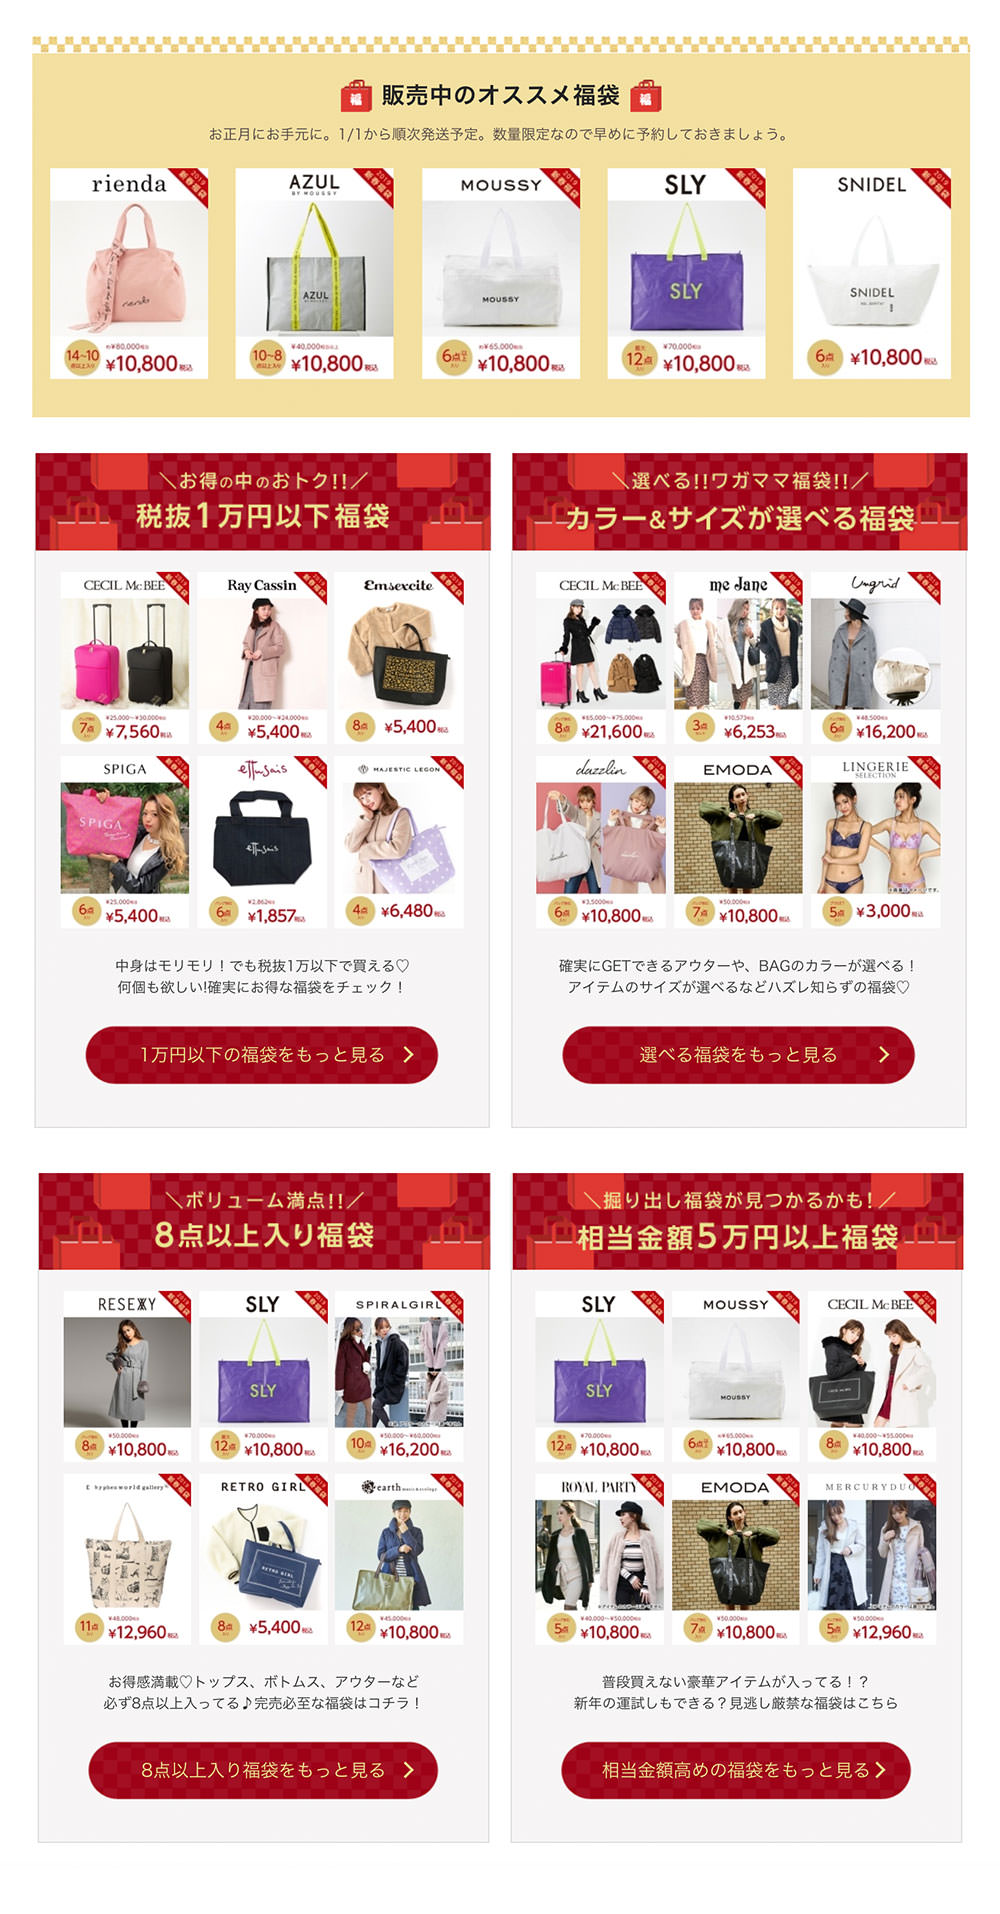 日本跨年日本過聖誕不可錯過日本福袋/推薦福袋品牌/購買福袋網站/預購福袋分享